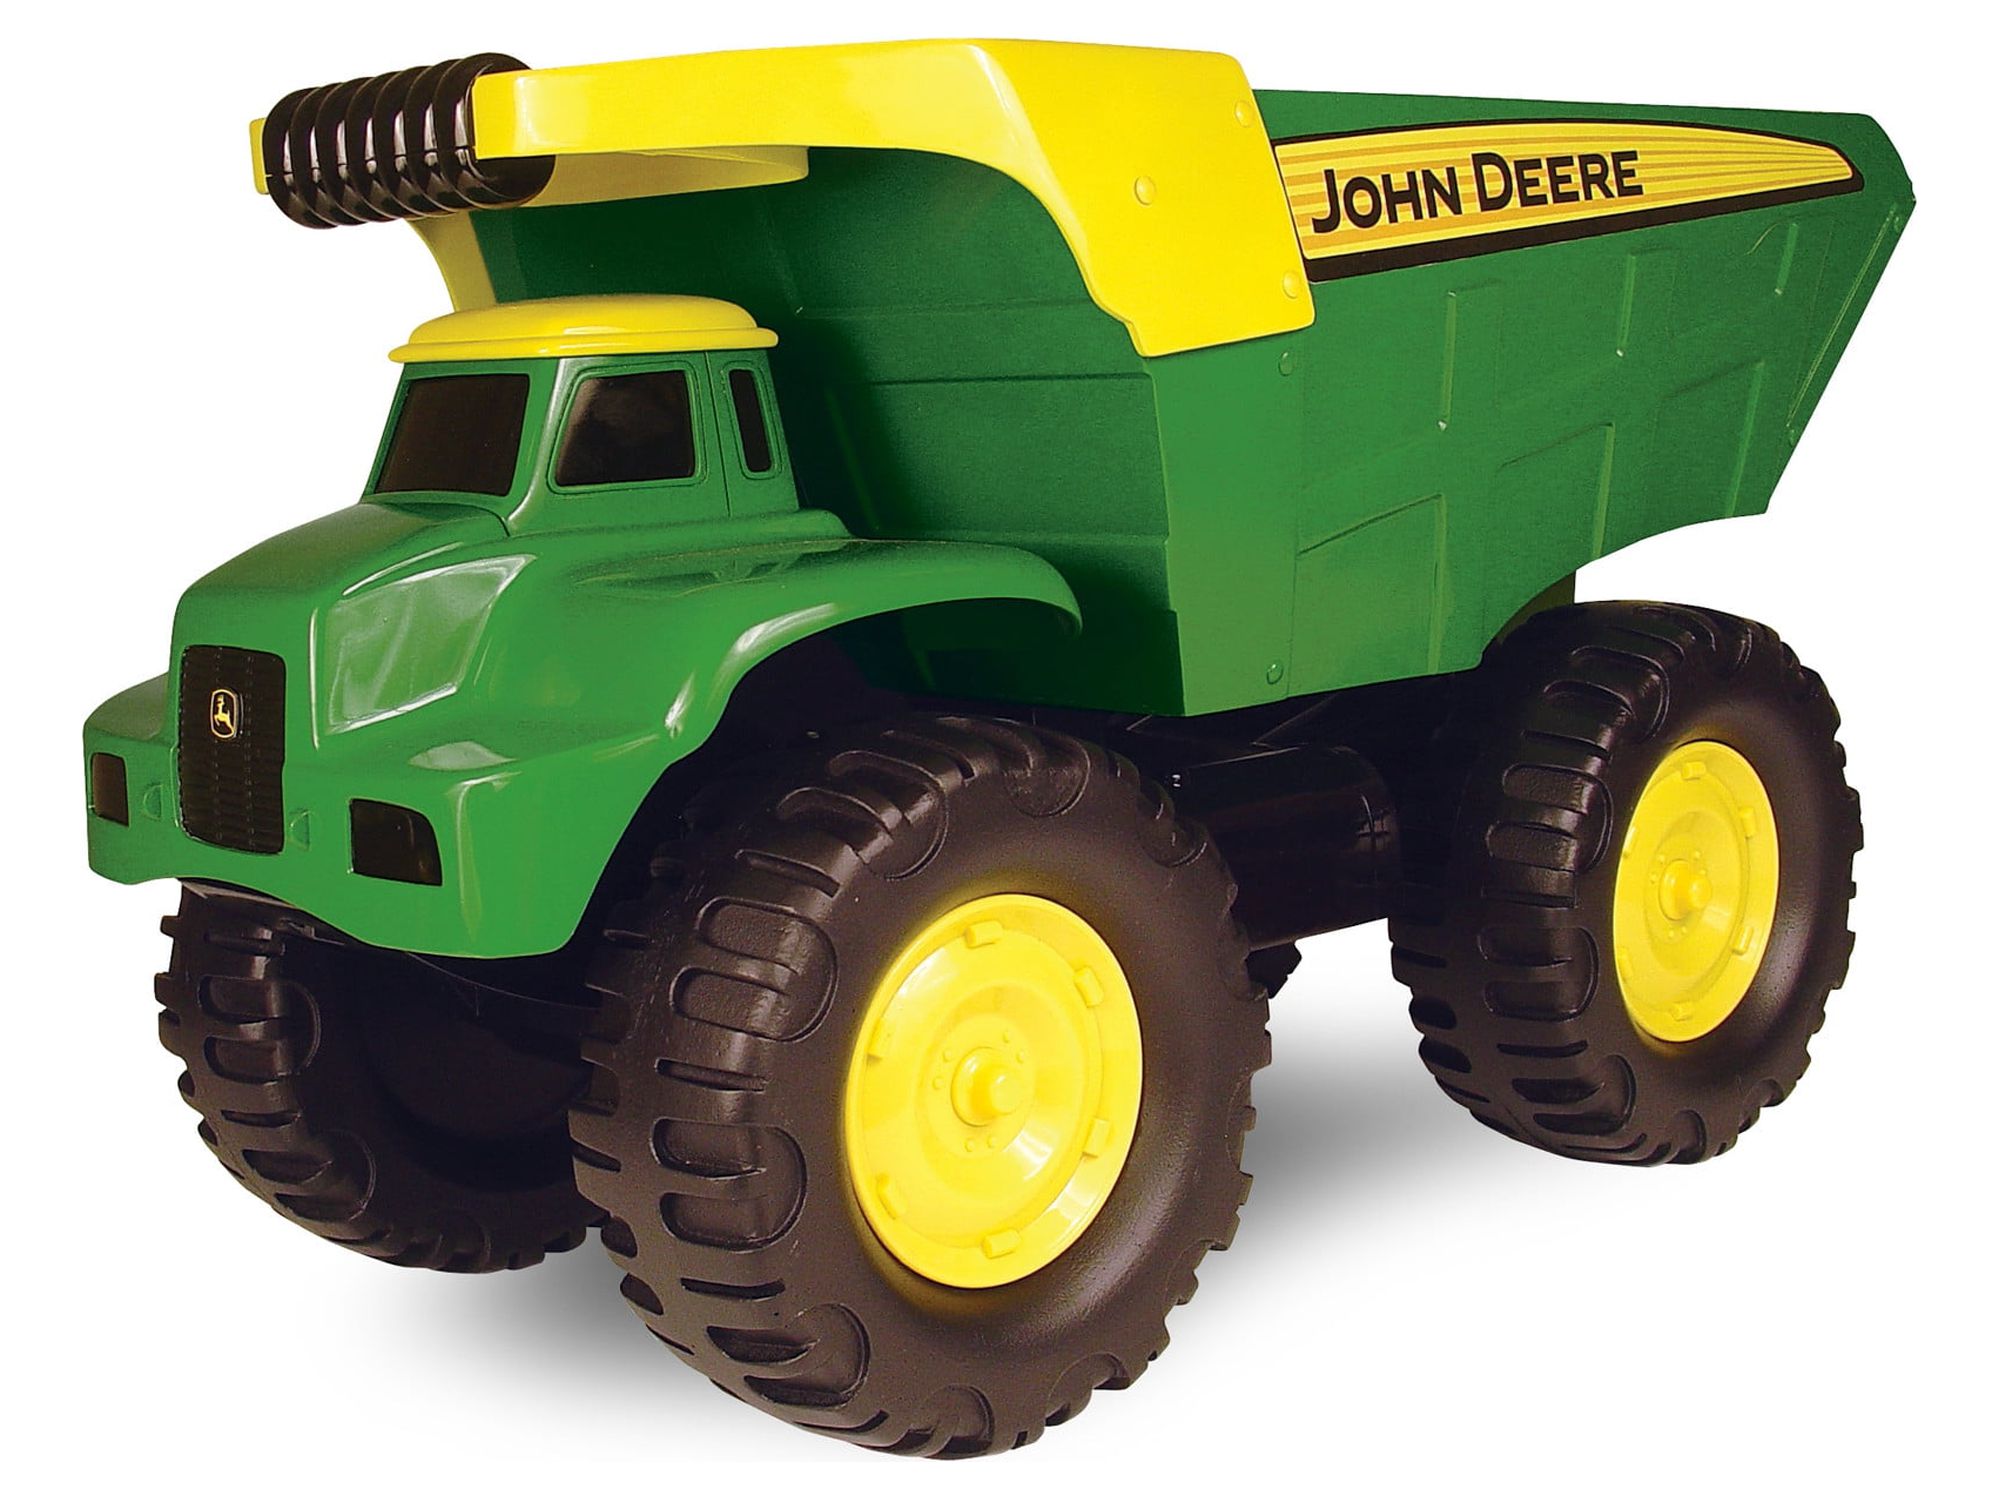 John Deere Big Scoop Toy Dump Truck 21&quot; Green - image 1 of 2